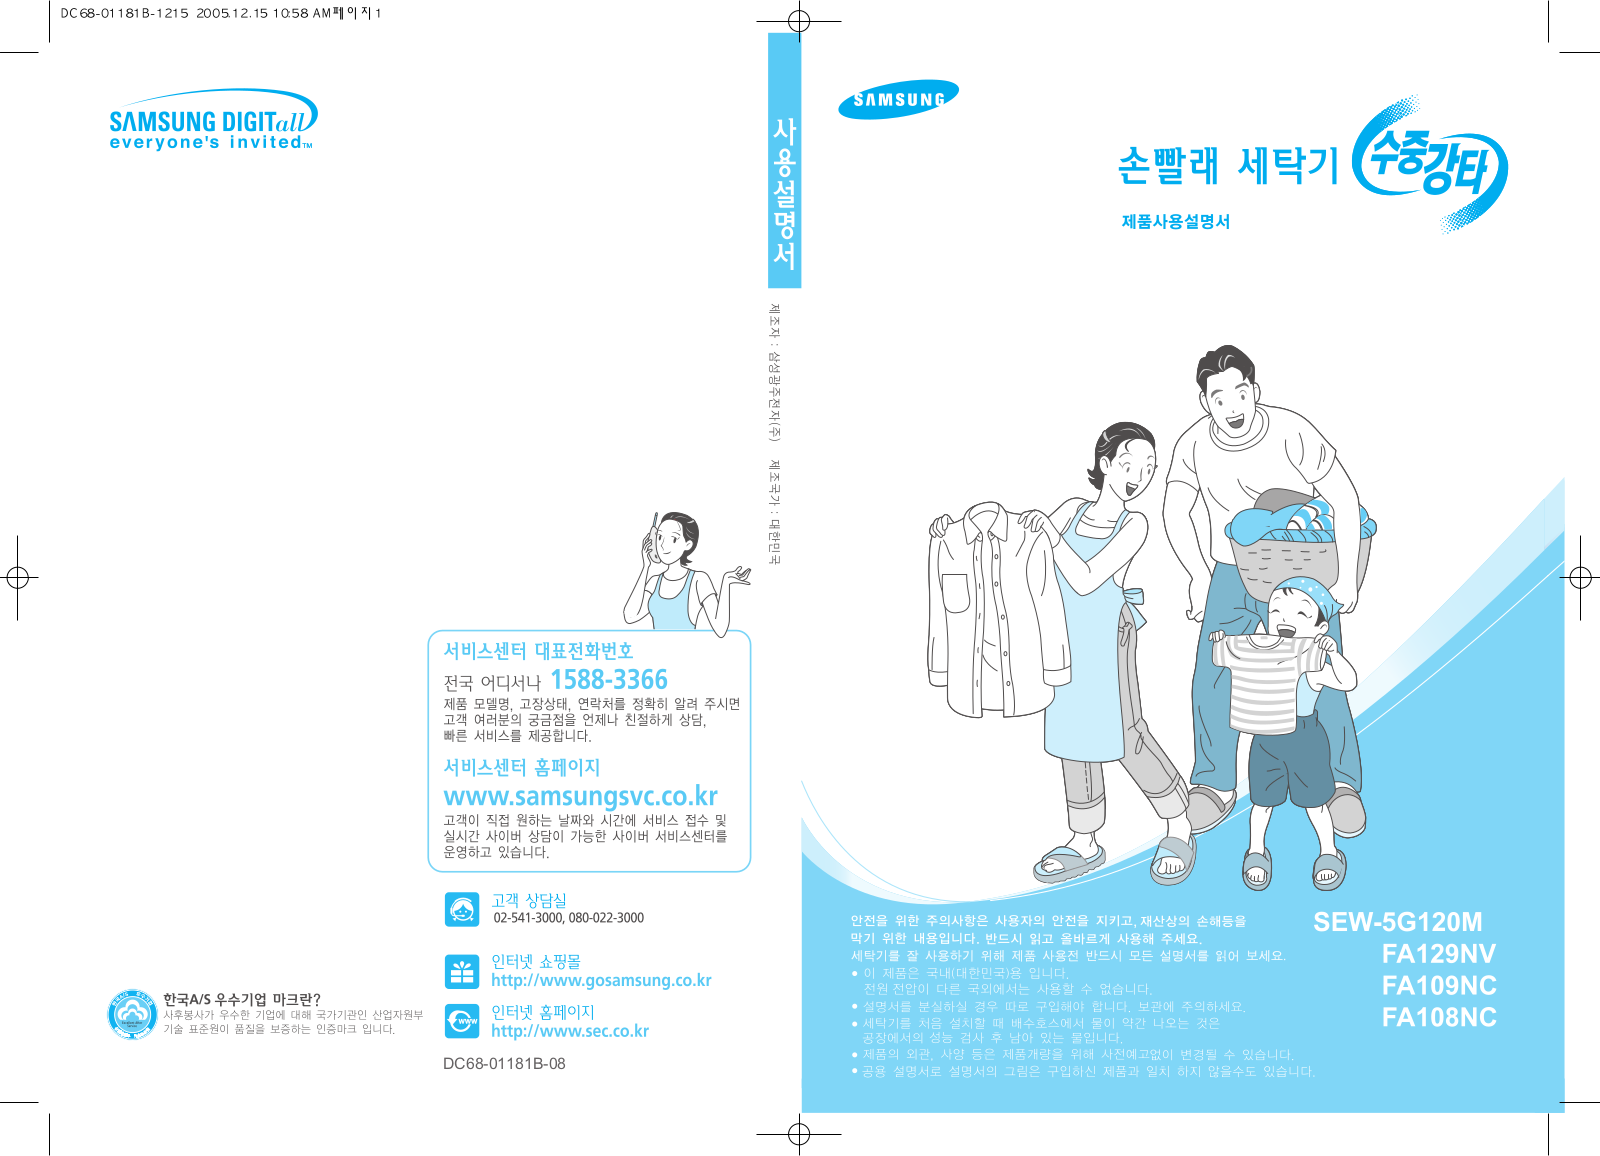 Samsung SEW-FA129NV, SEW-FA109NC User Manual